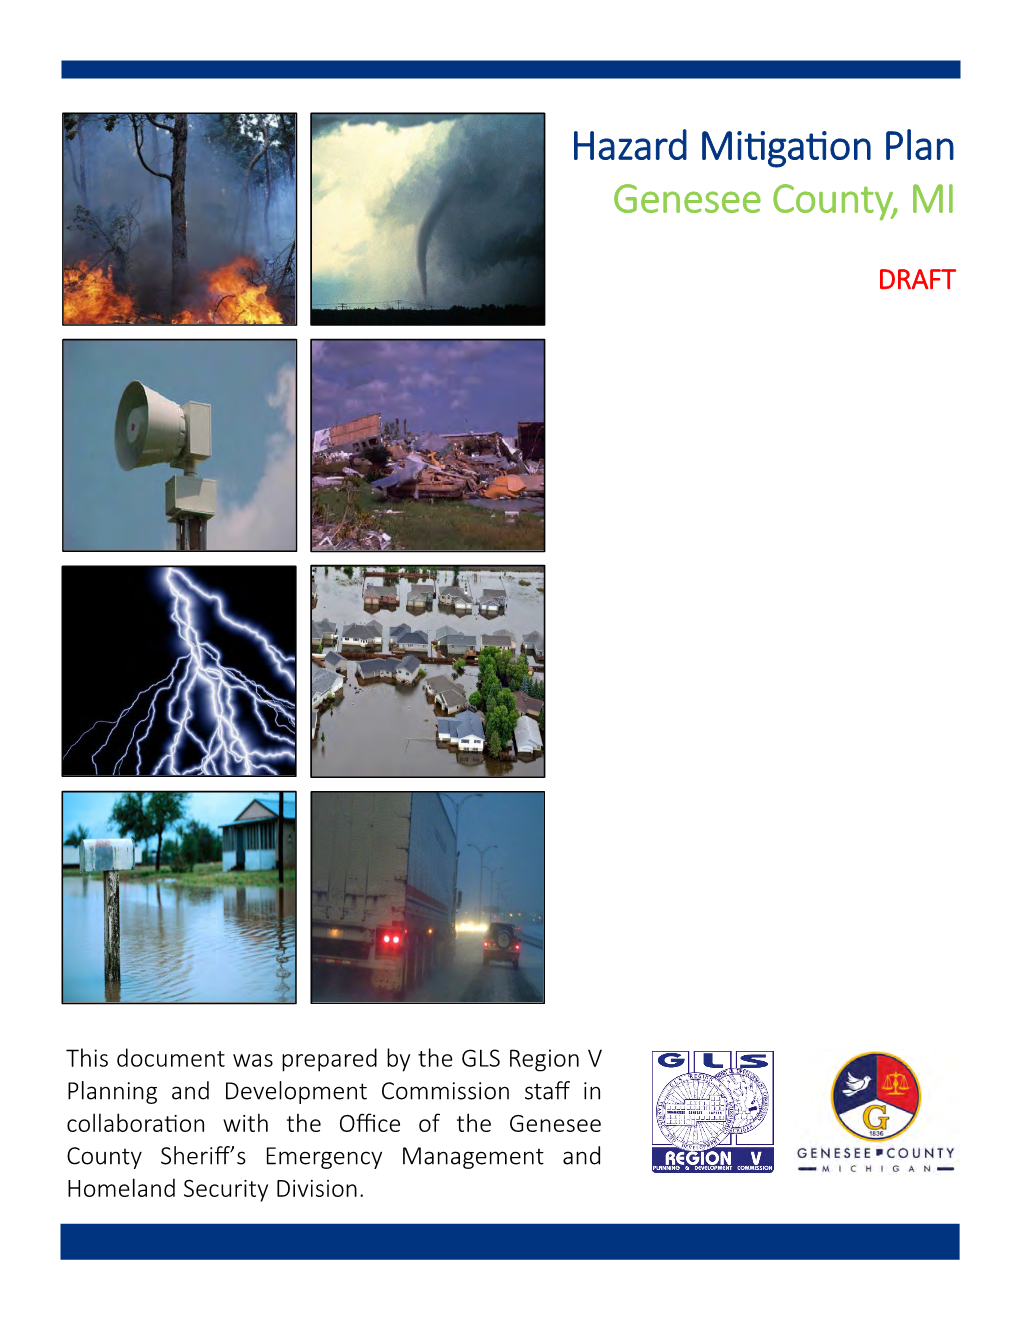 Genesee County Hazard Mitigation Plan Update